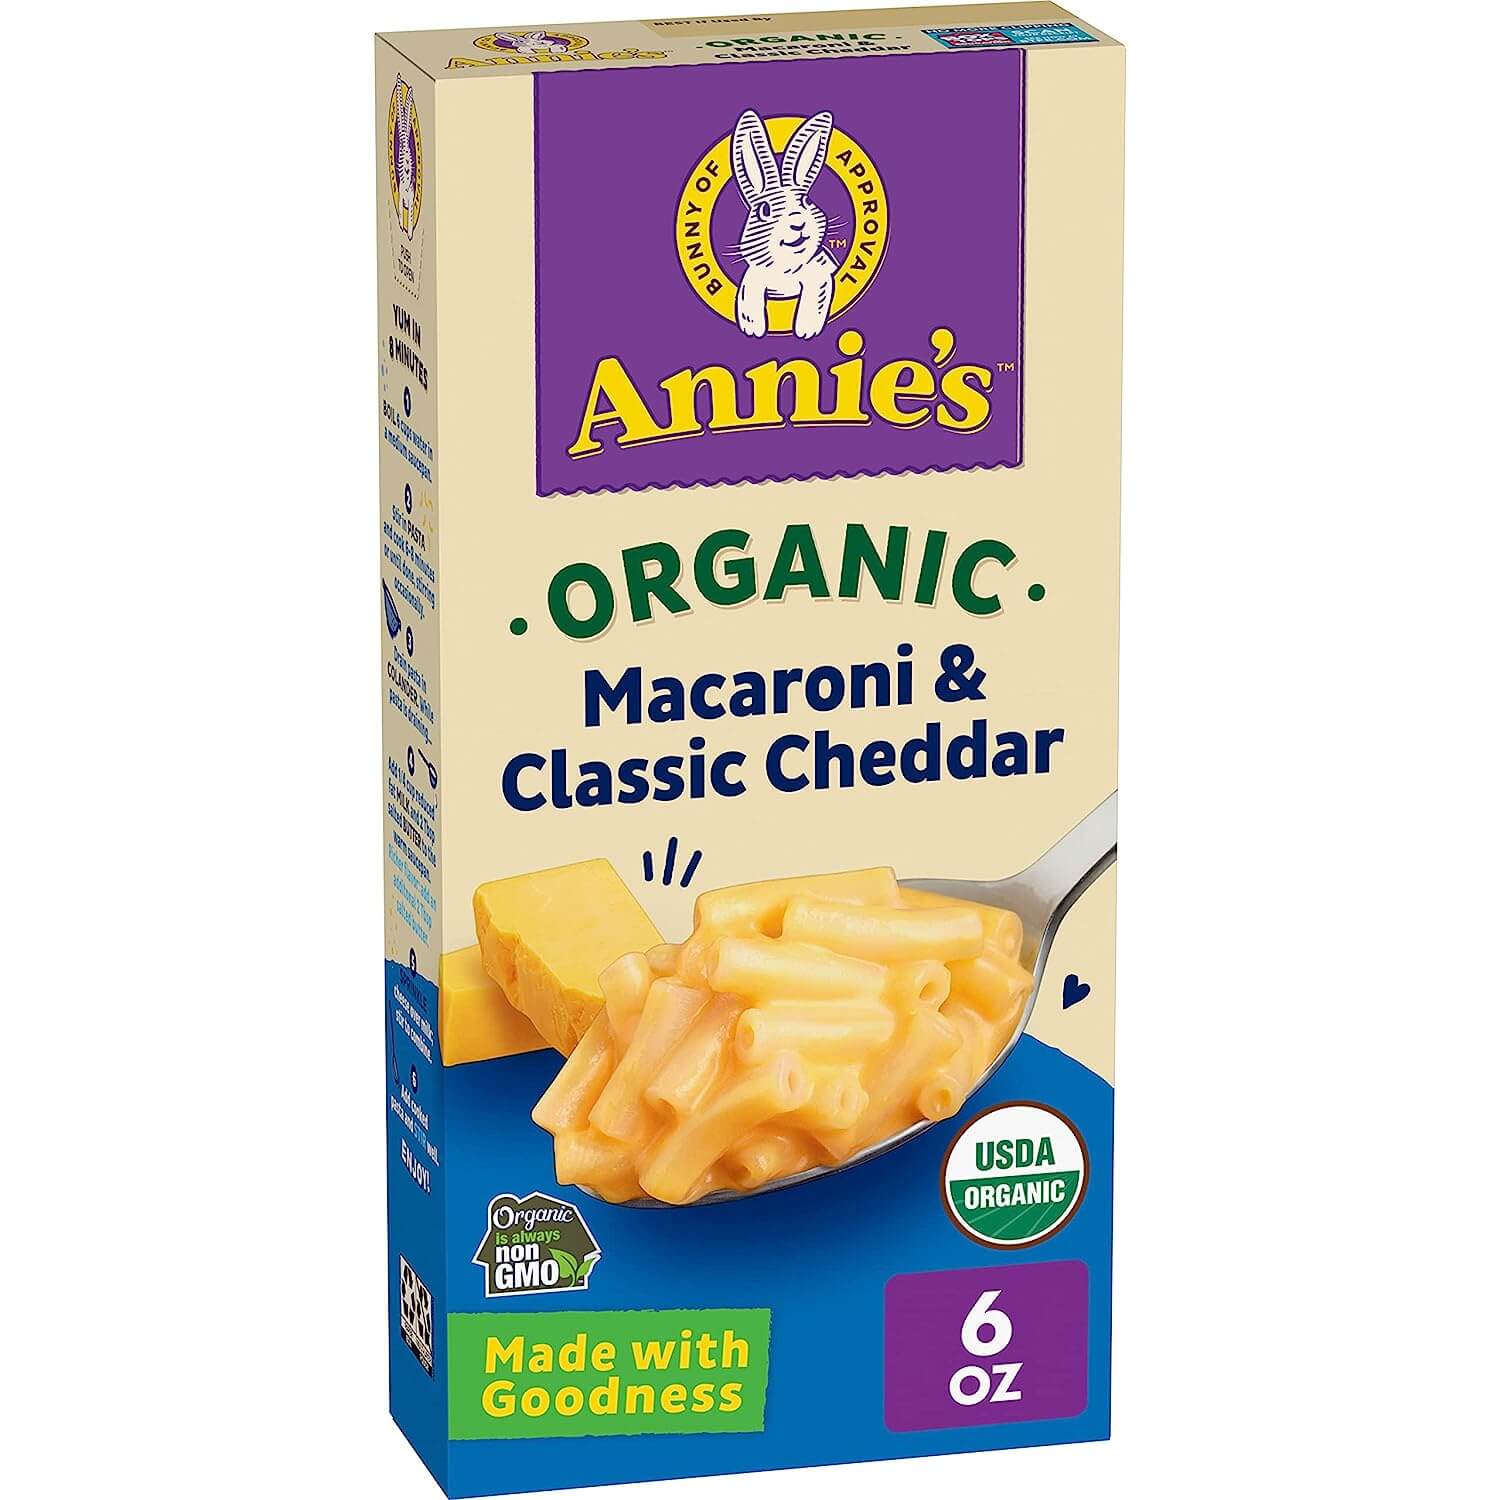 Annie’s Macaroni & Classic Cheddar